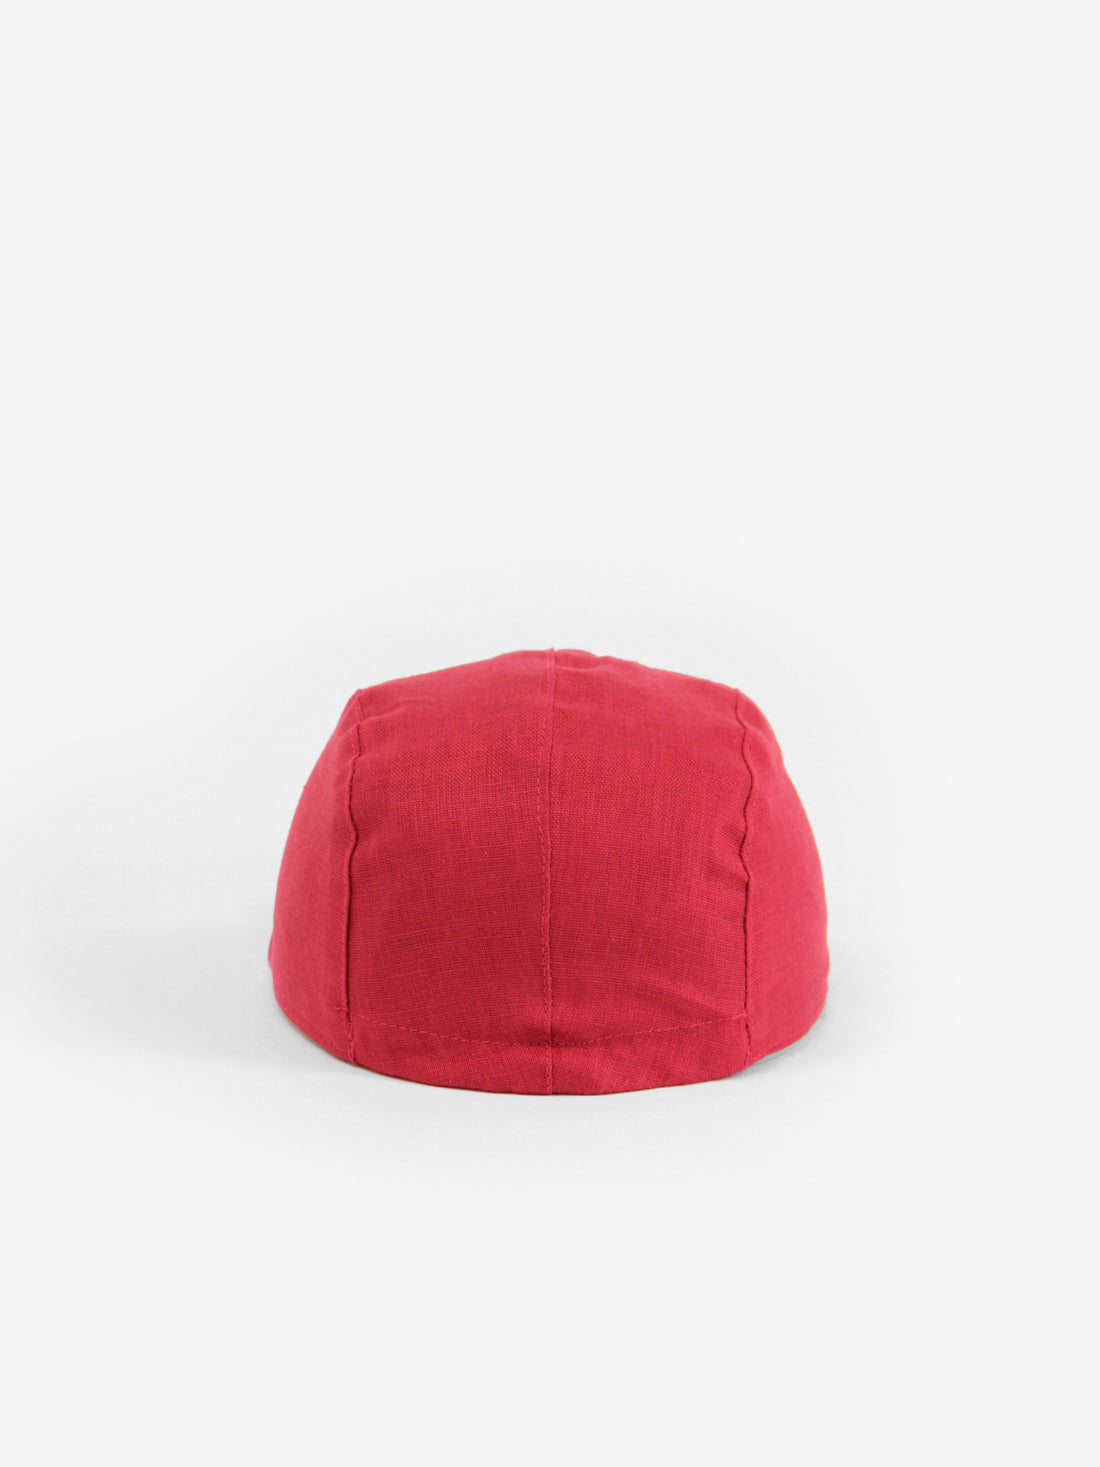 Linen cap by Caribou, solid colours